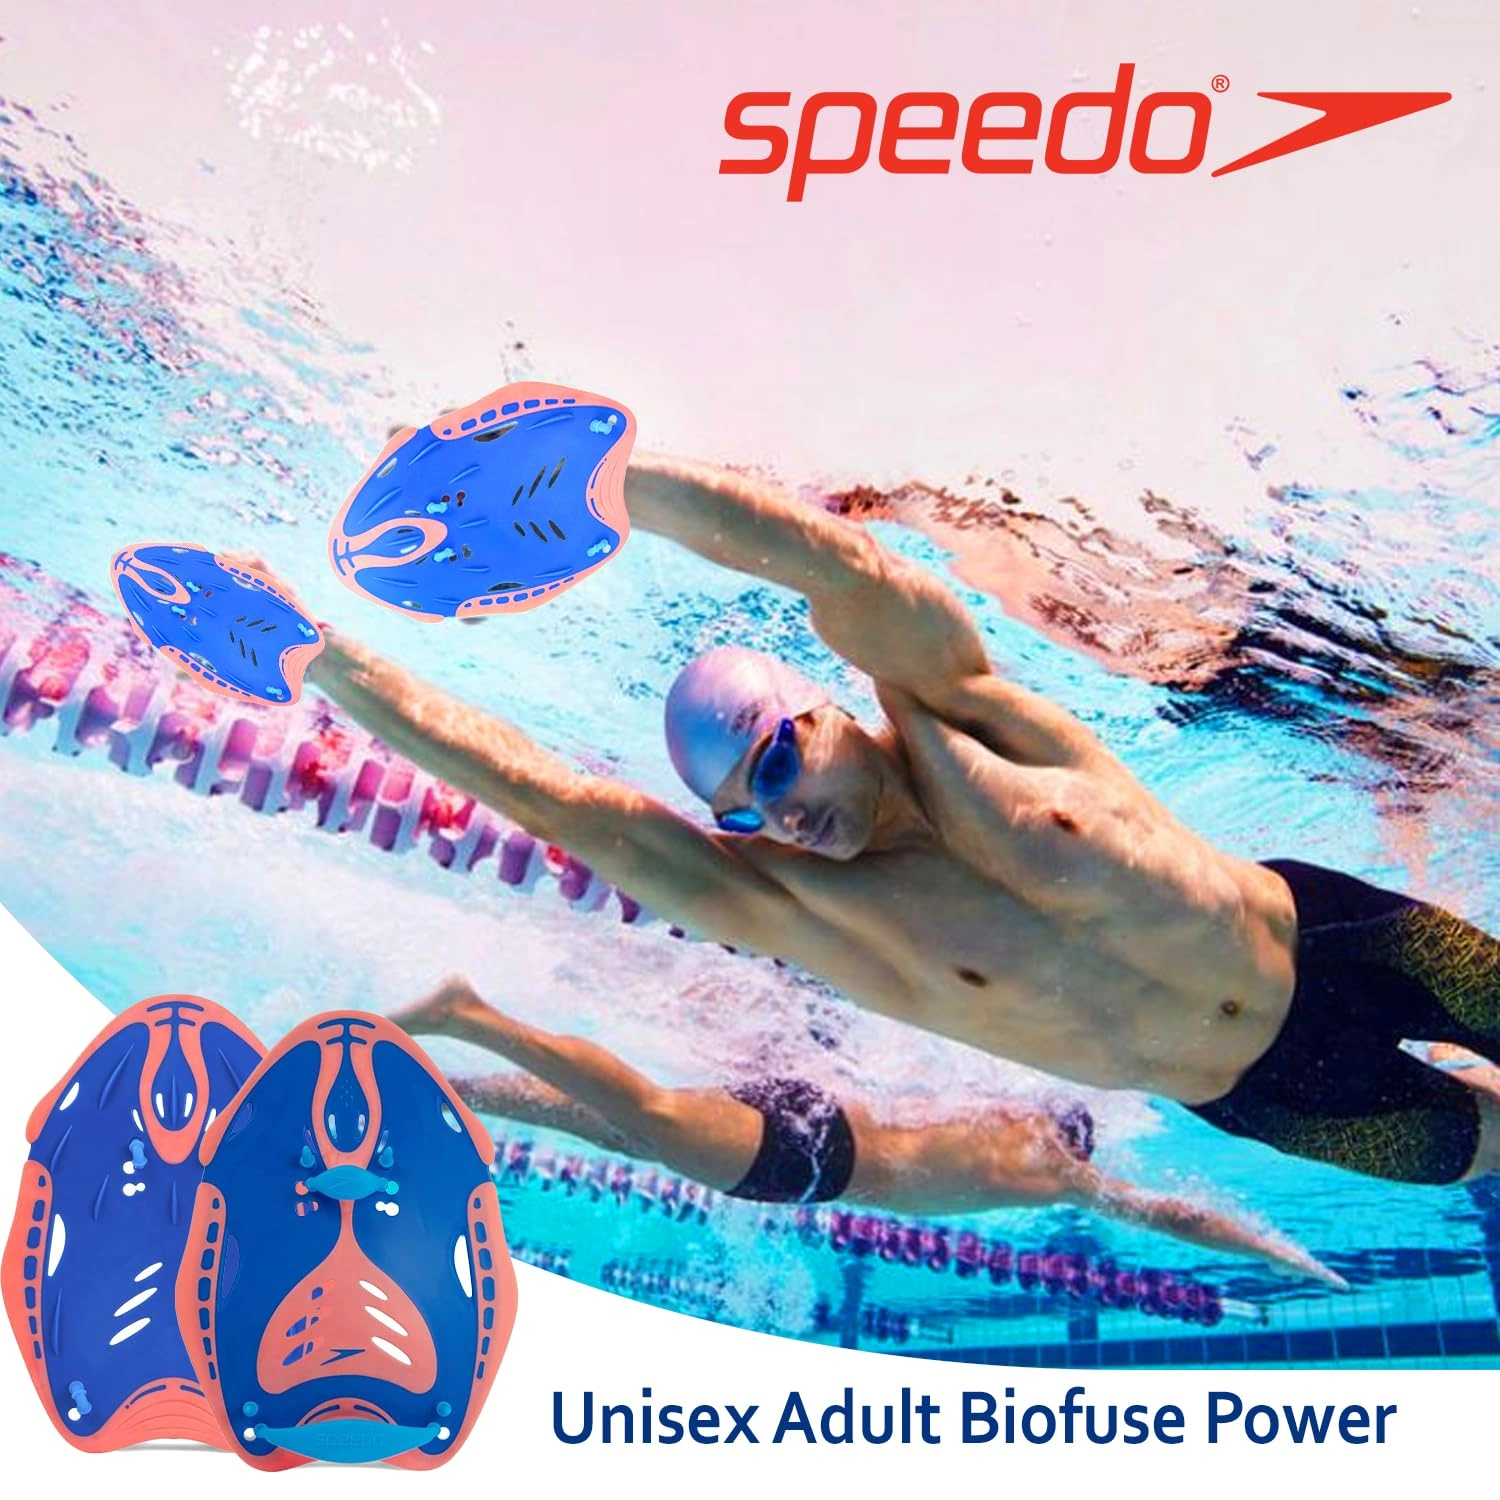 Speedo Biofuse Power Paddle, Training Aids, Unisex Adult-BLUE/ORANGE-L-4